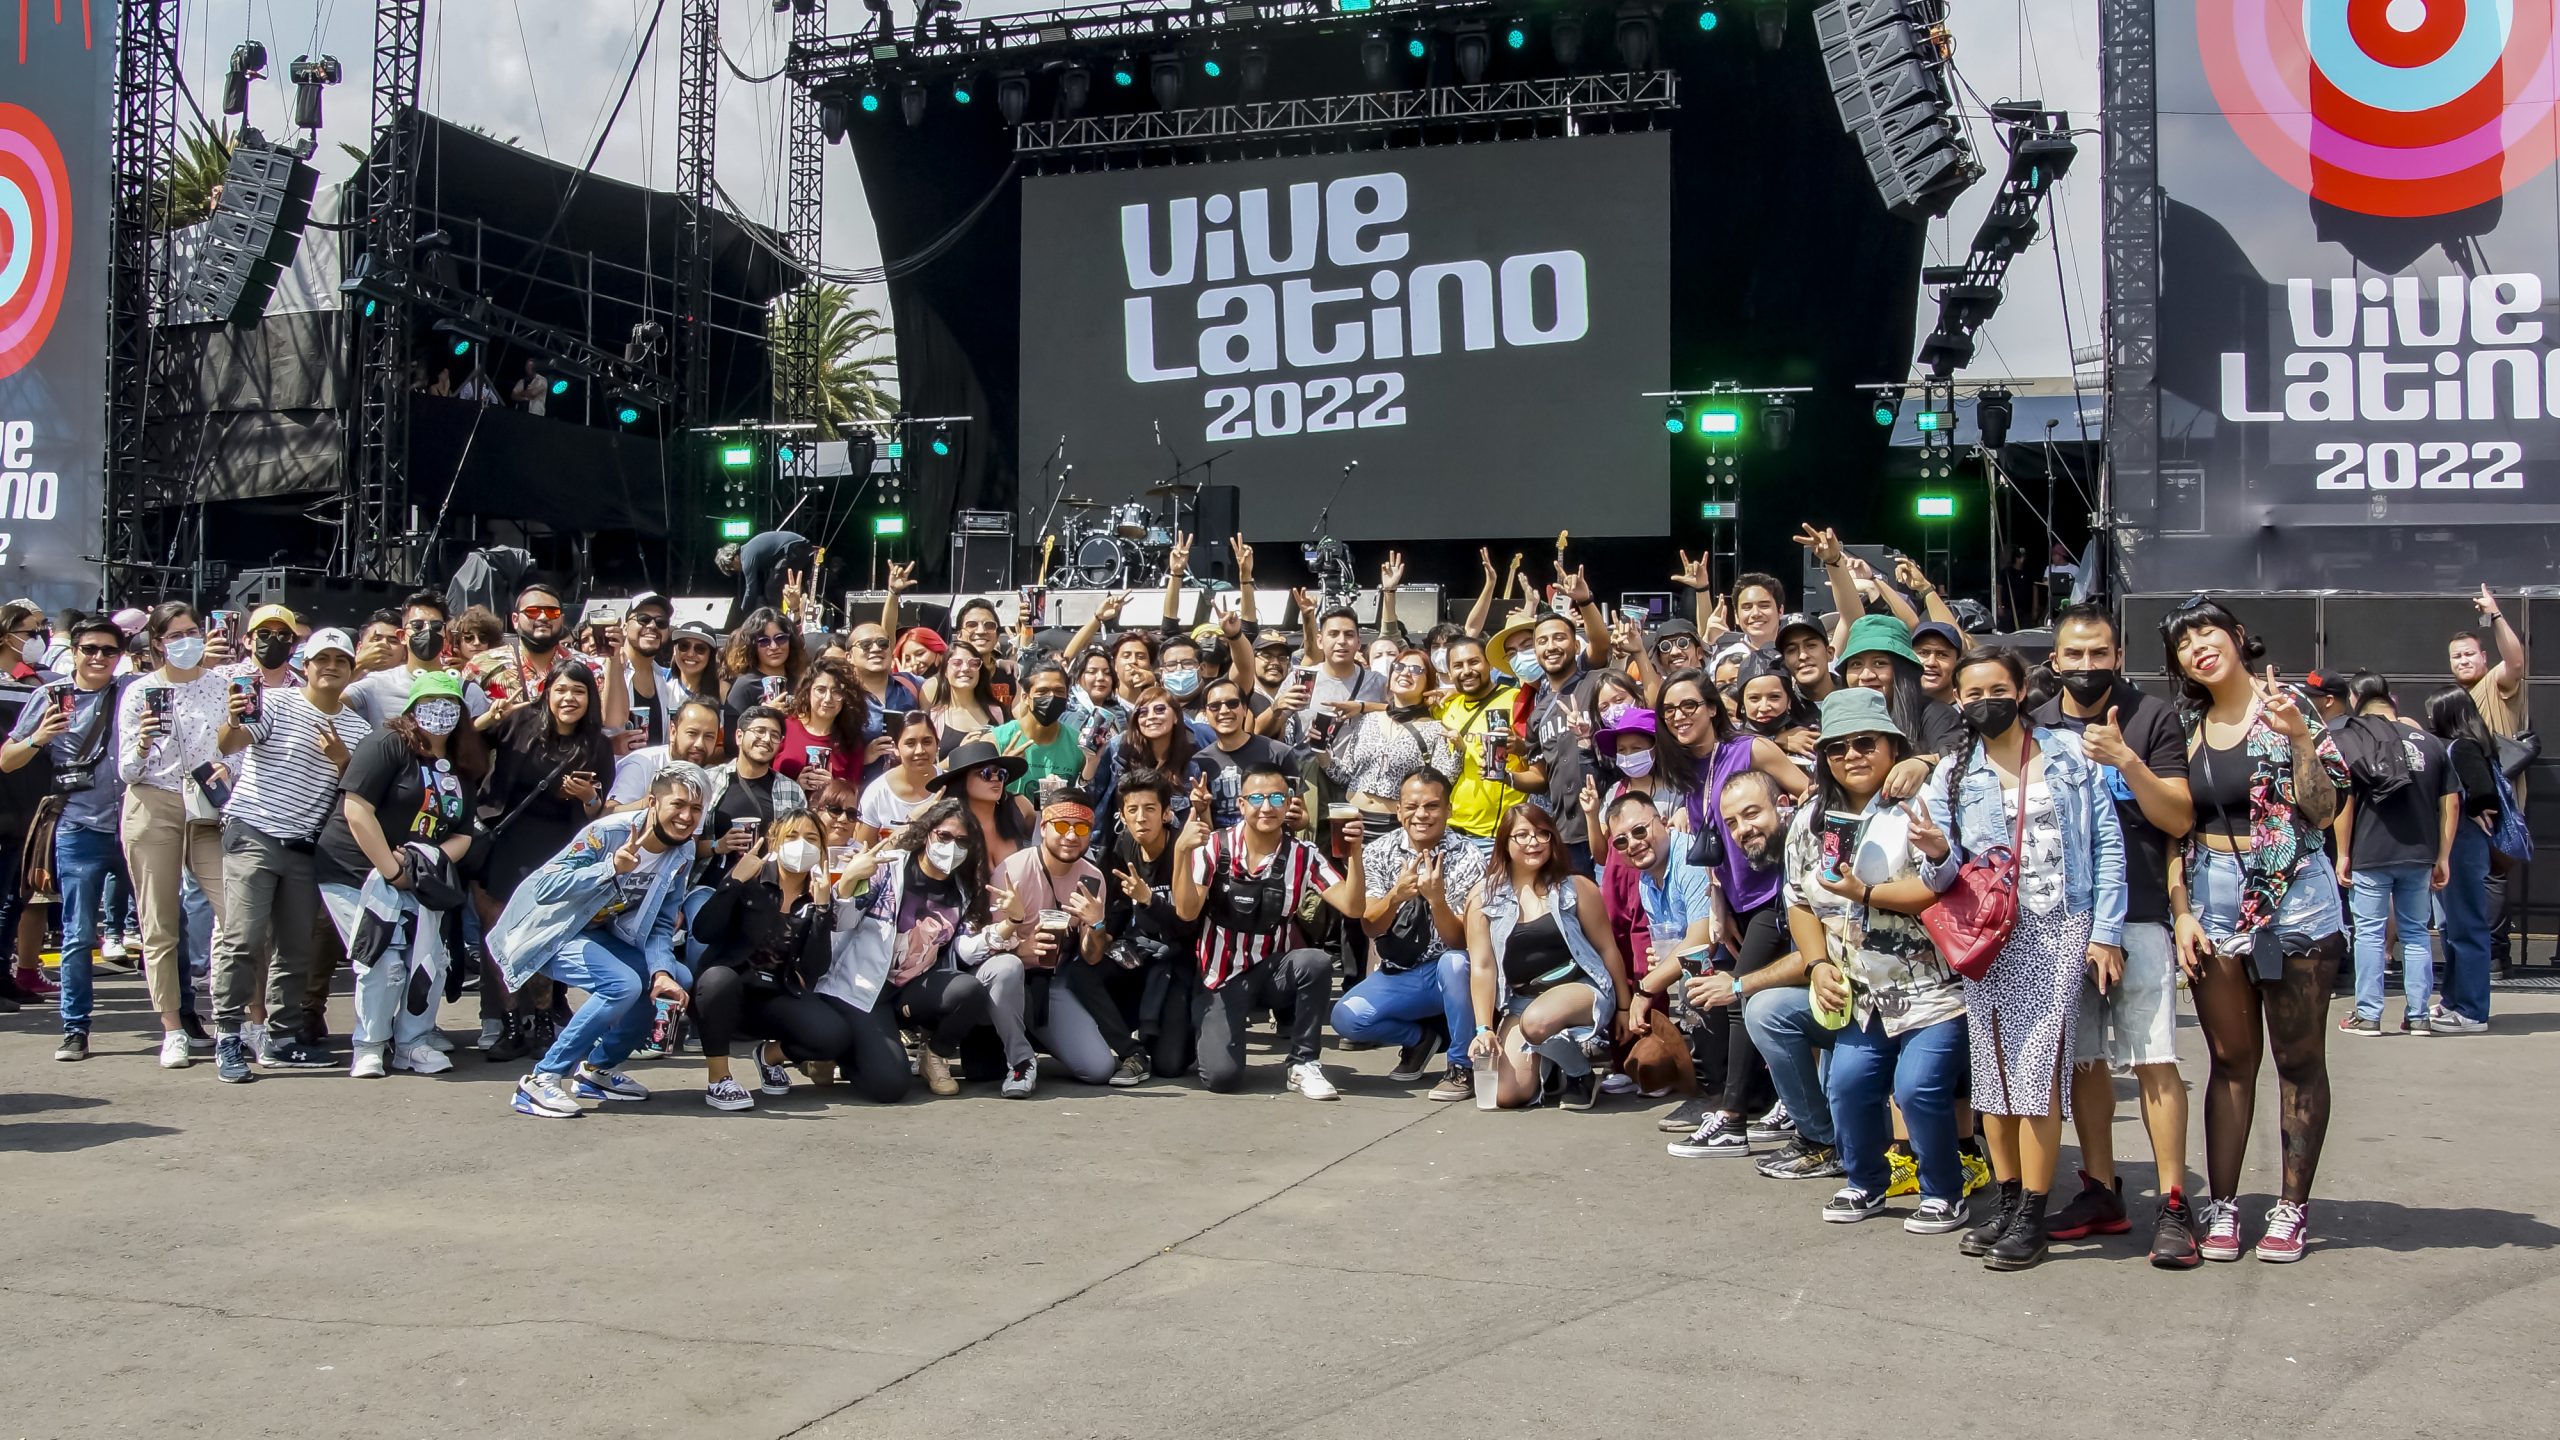 Estos fueron los mejores actos que vimos en el Vive Latino 2022 